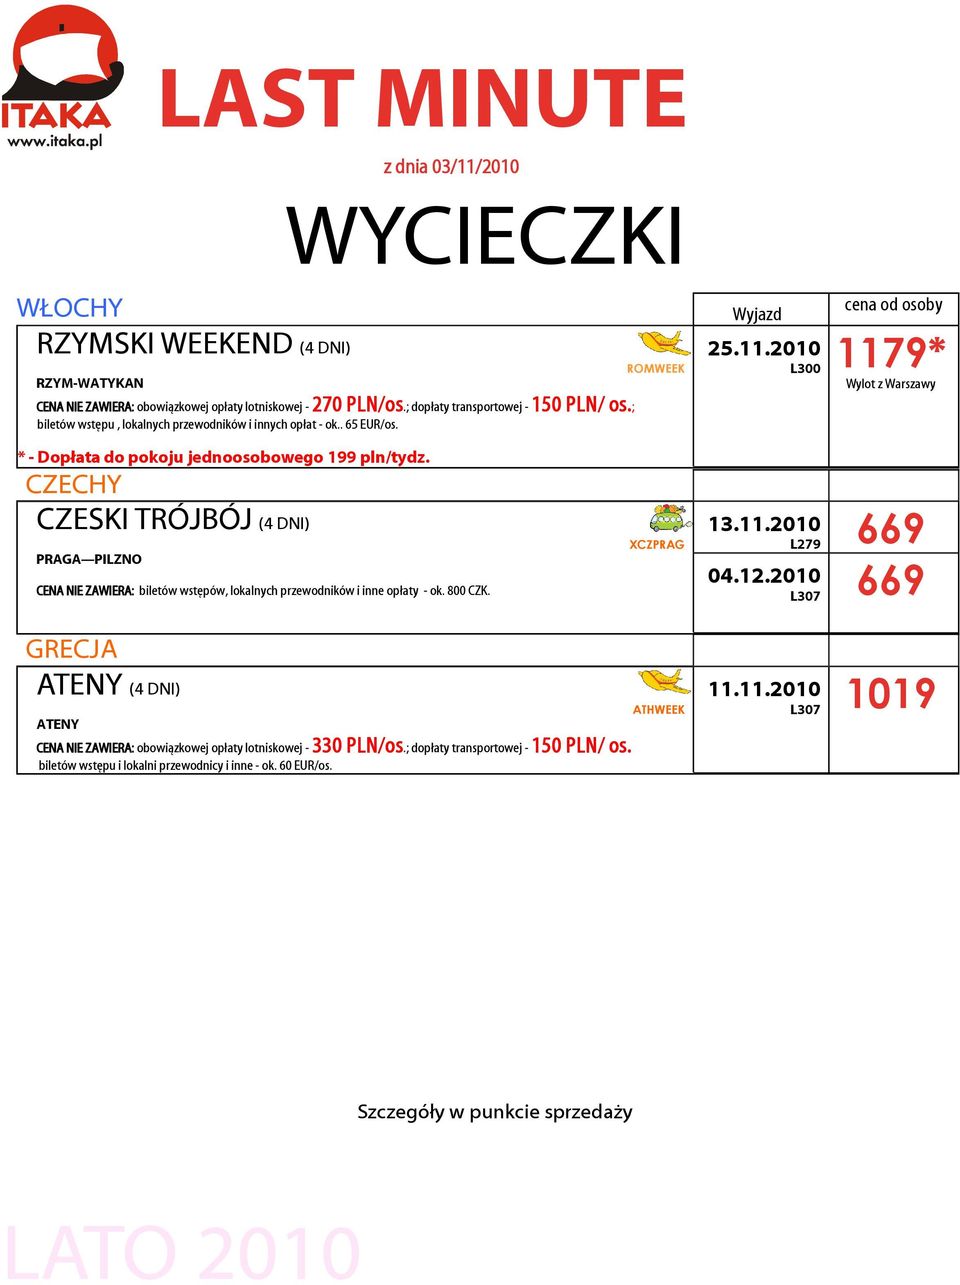 2010 1179* Wylot z Warszawy * - Dopłata do pokoju jednoosobowego 199 pln/tydz.